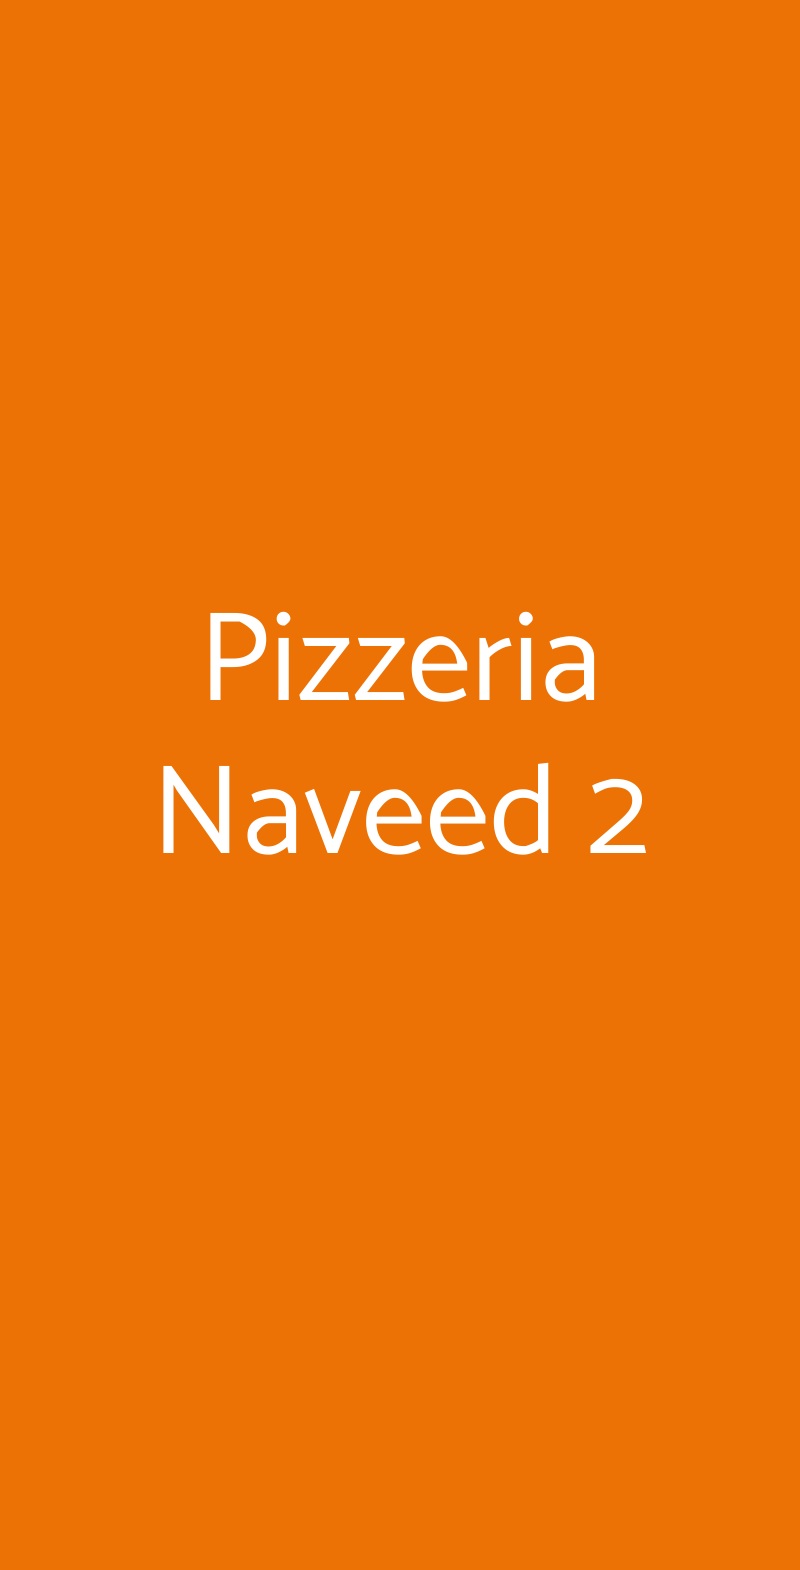 Pizzeria Naveed 2 Bologna menù 1 pagina